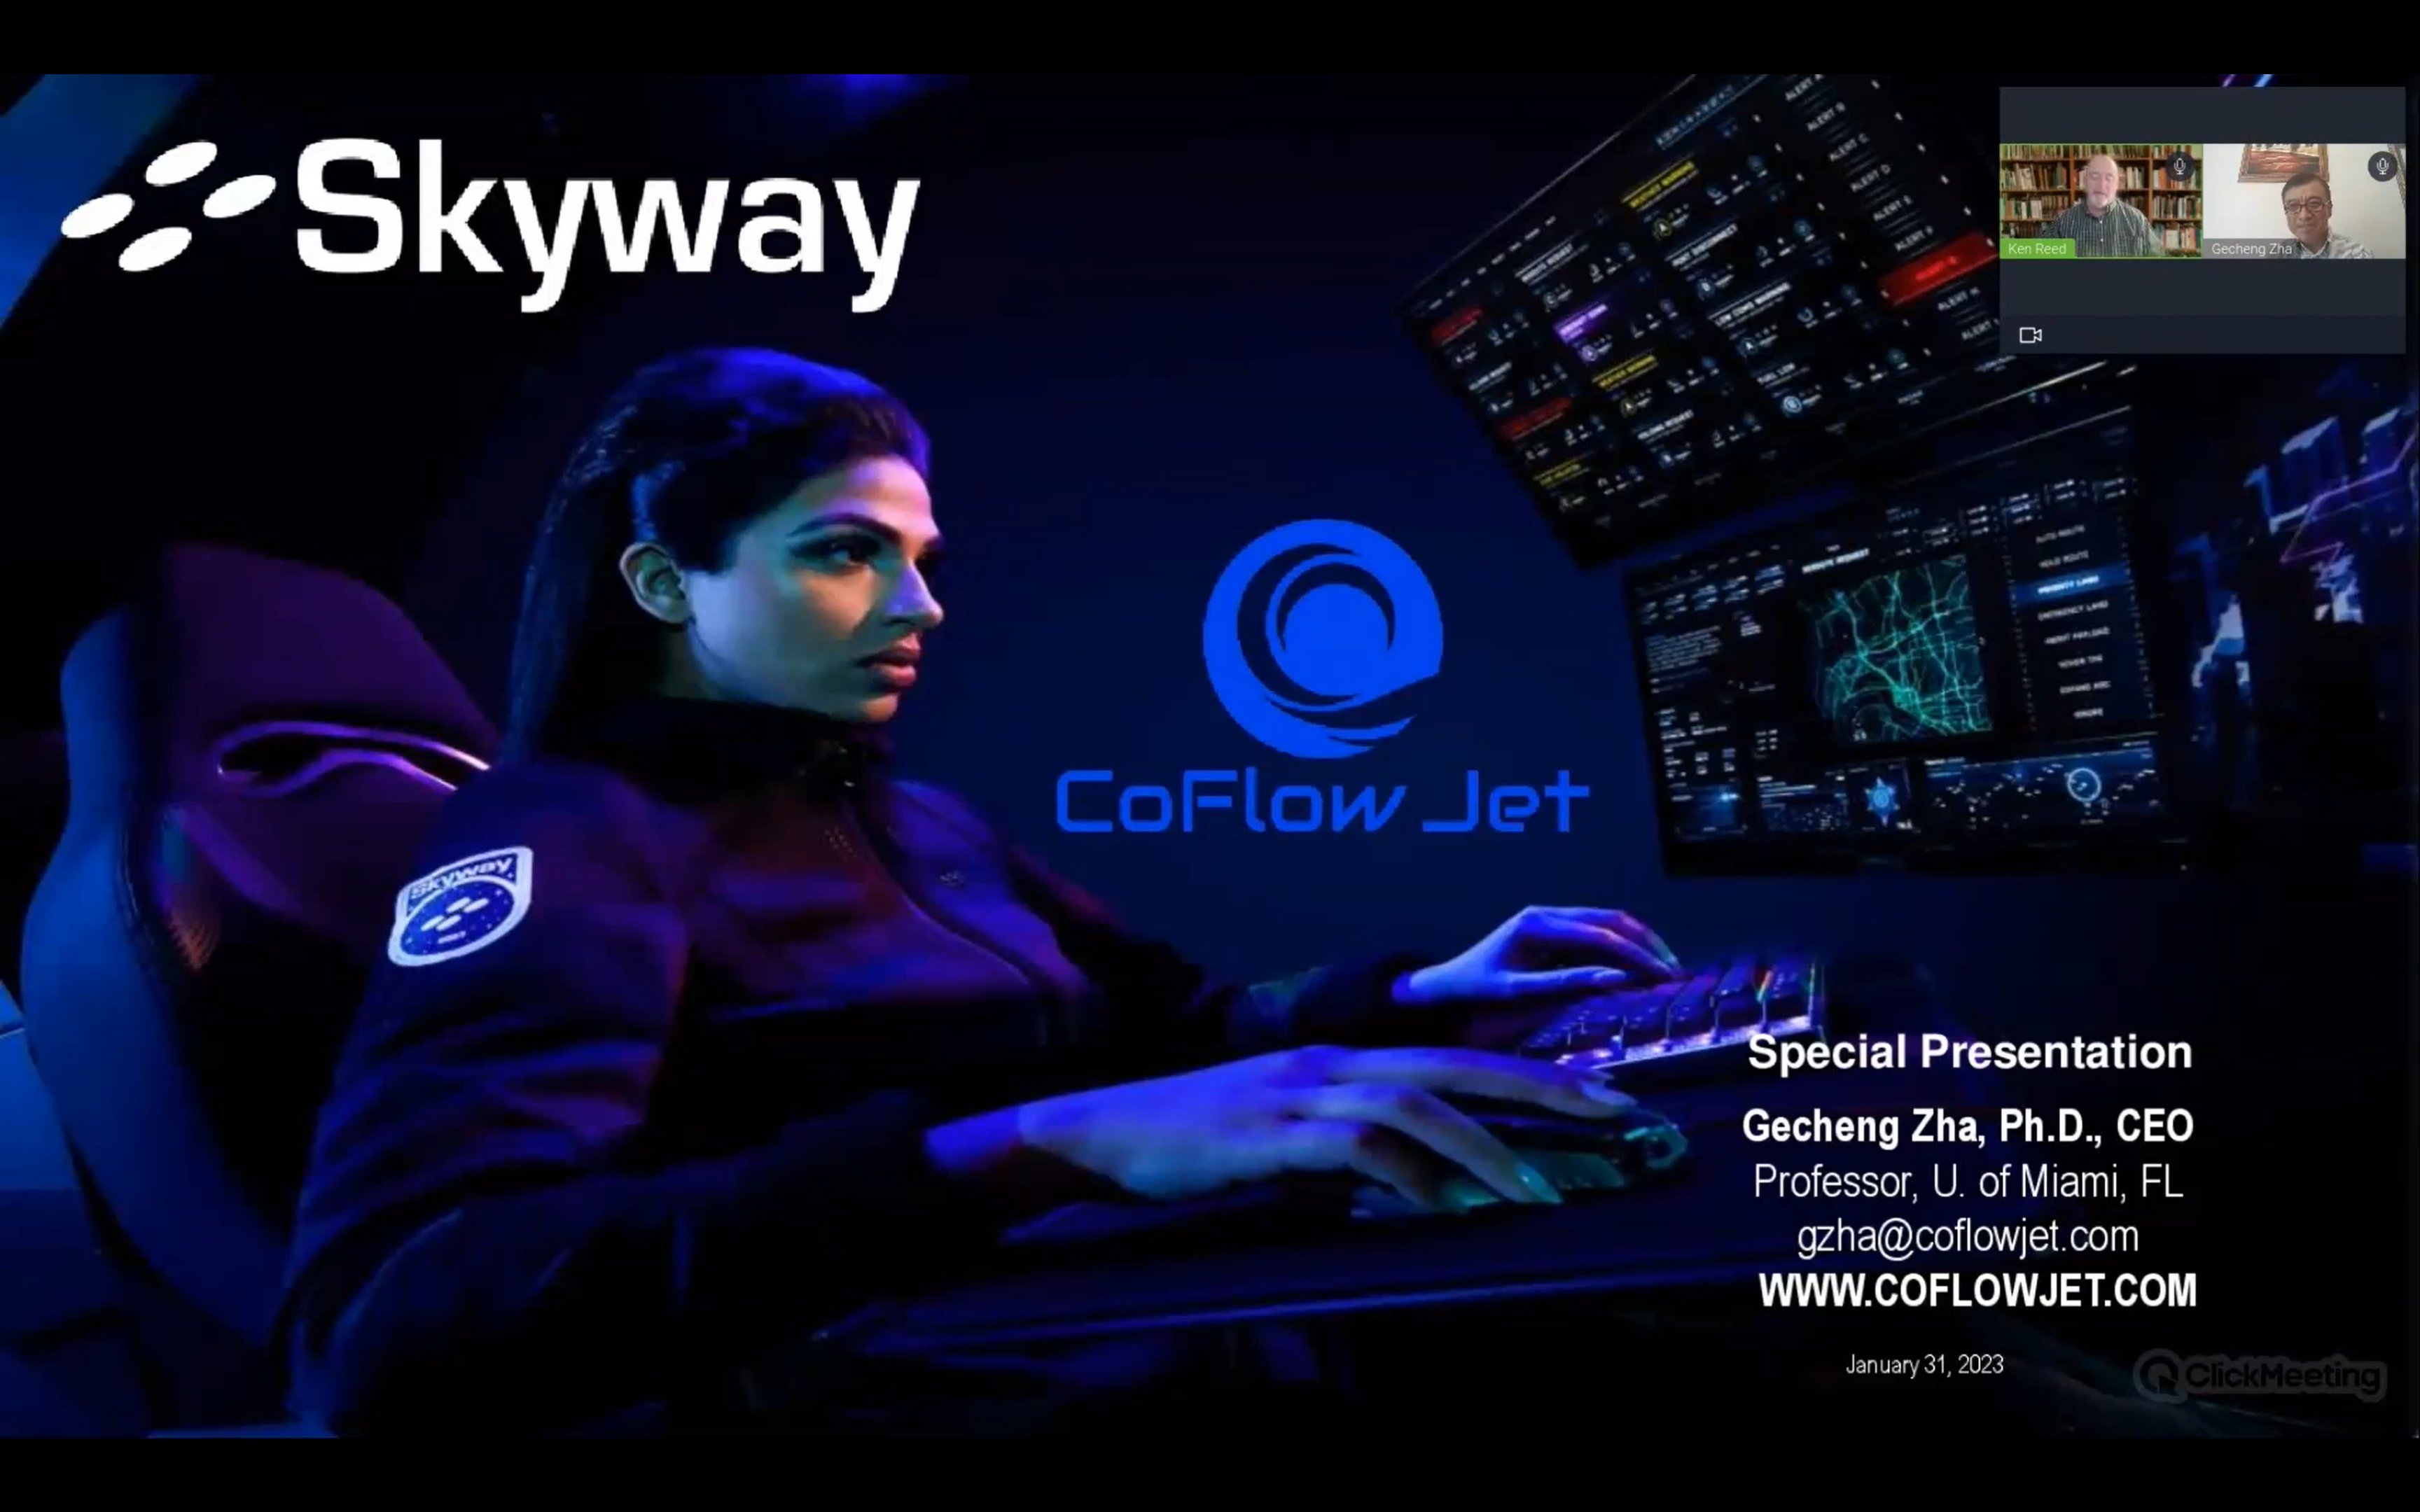 Skyway featured CoFlow Jet via webinar: New Wing Technology, Jan. 31, 2023